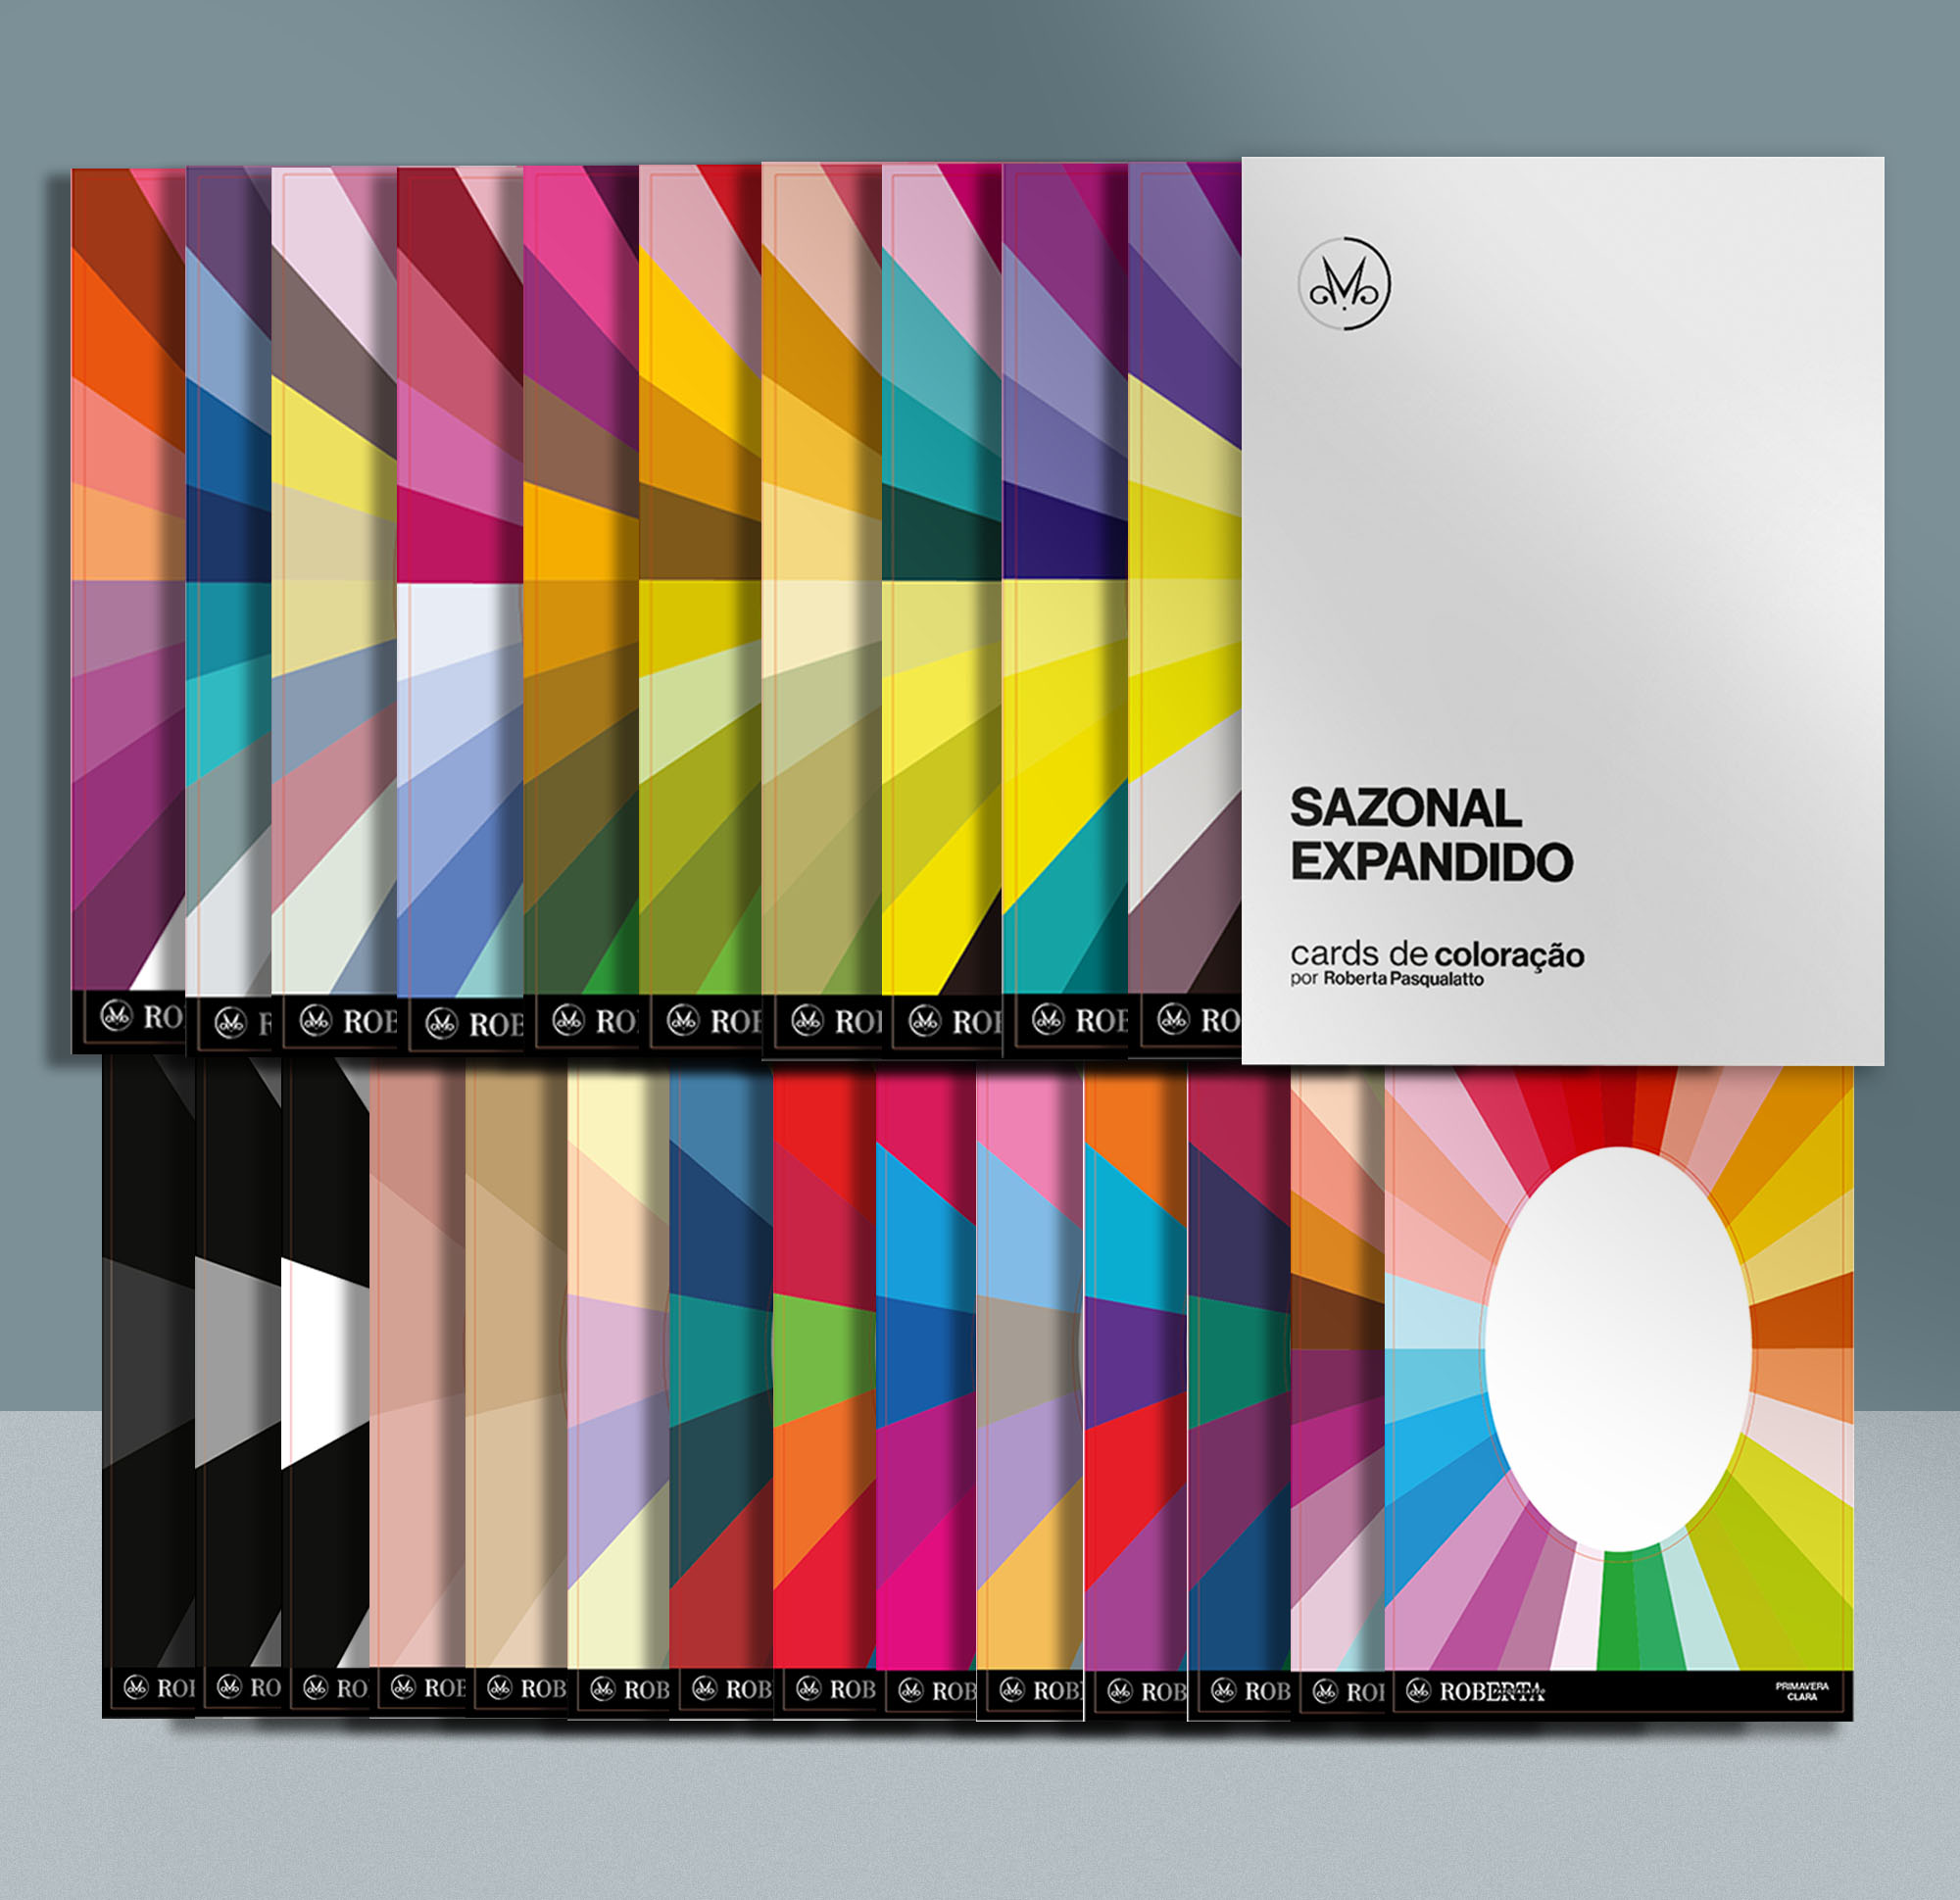 Cards de coloração (Cartela cores) método sazonal expandido by Roberta Pasqualato